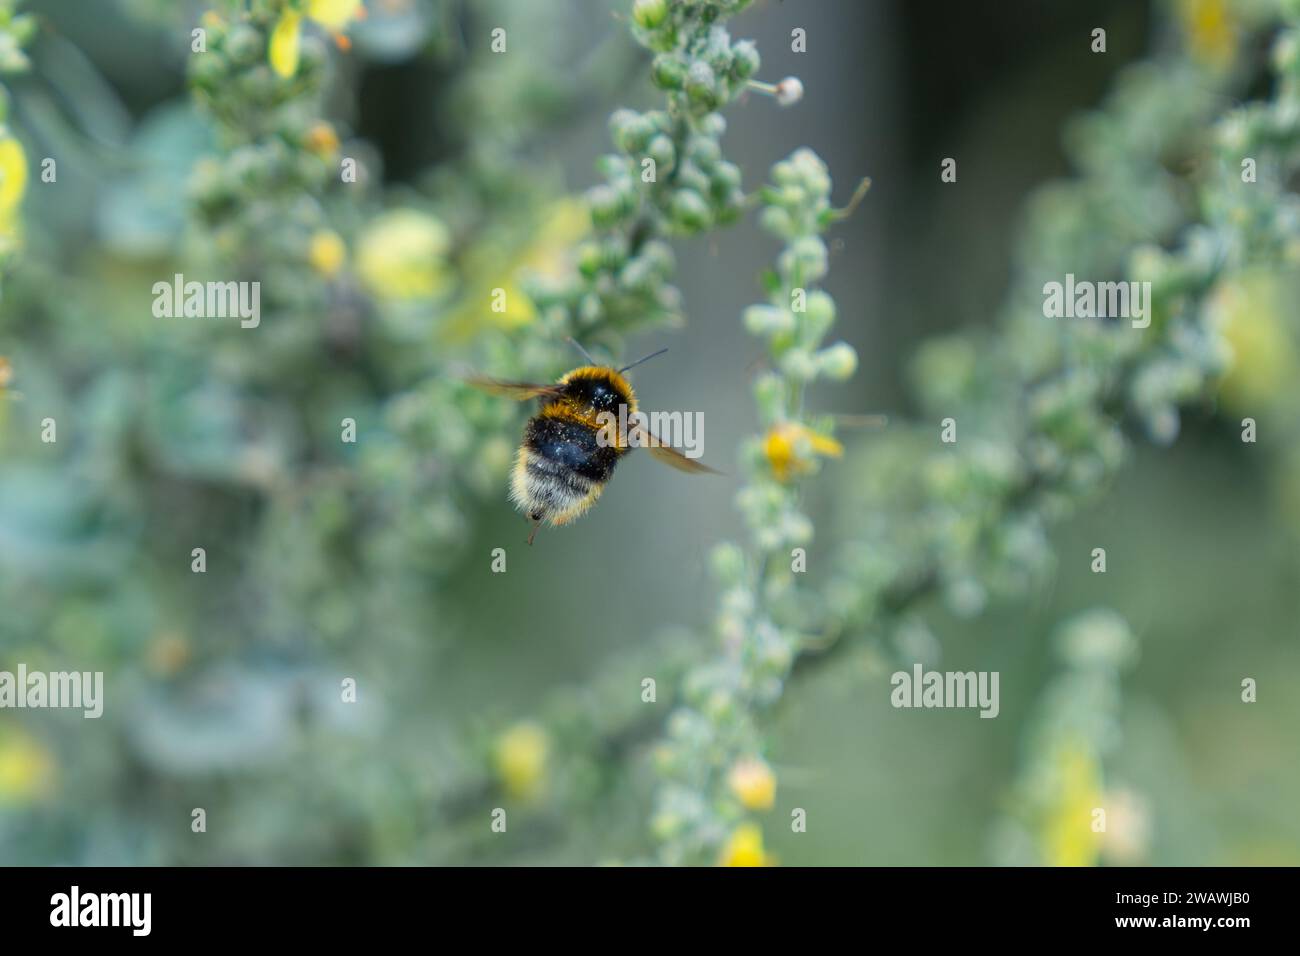 Volando via, le bombi-api raccolgono polline dal fiore giallo della pianta di mulleina con sacco di polline completo in nuova Zelanda. Foto Stock